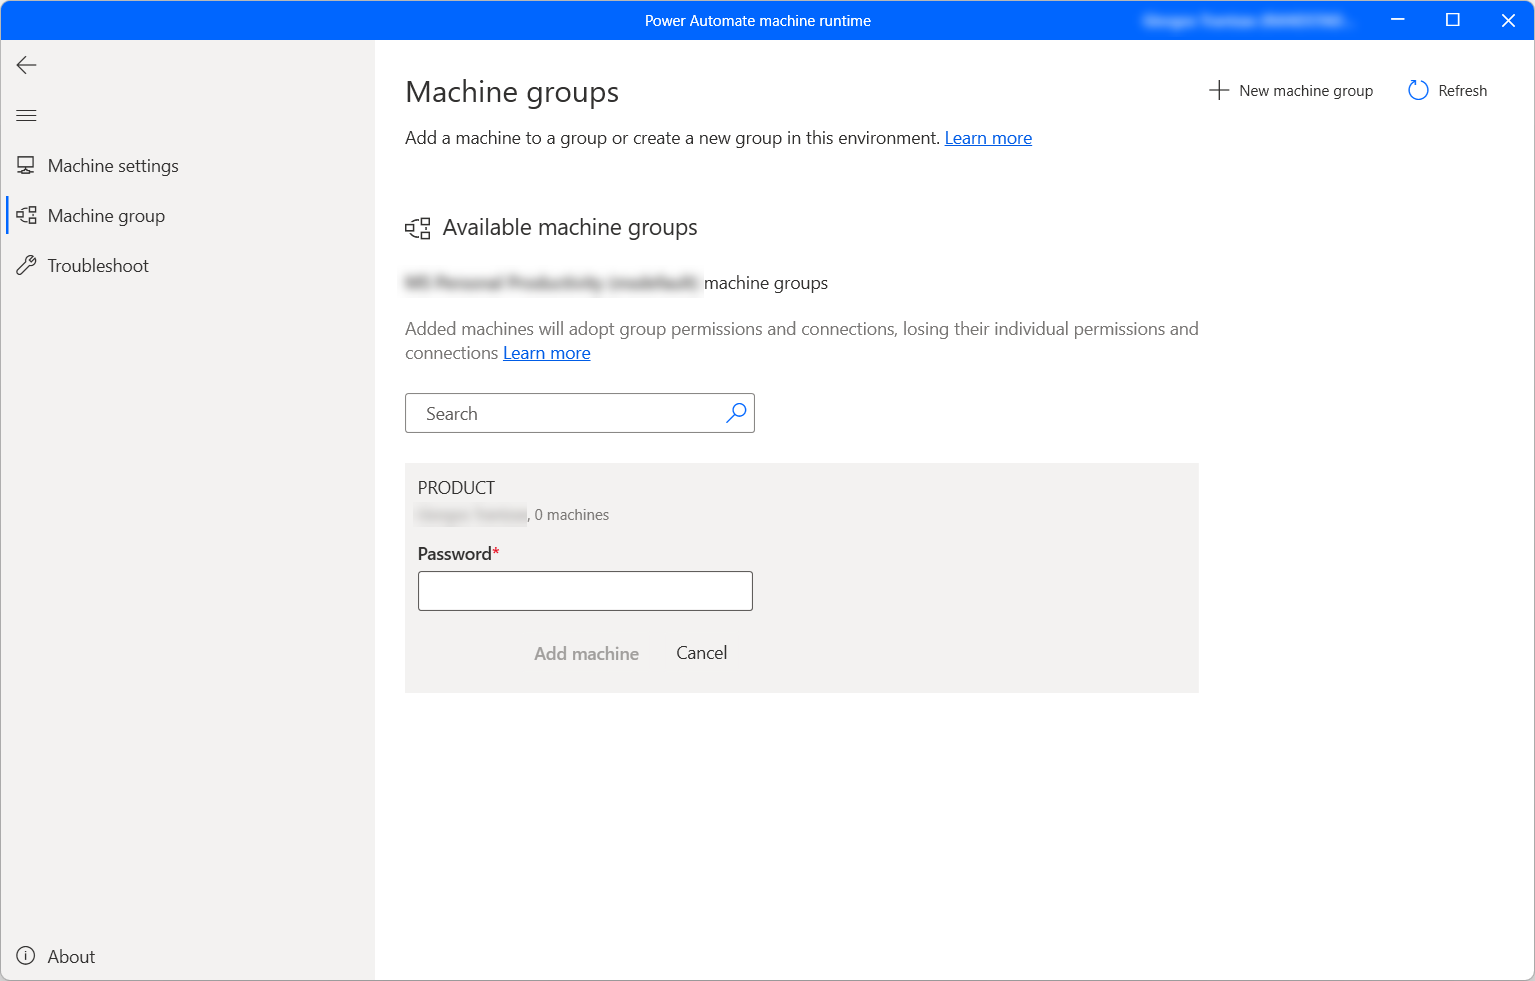 Captura de pantalla del cuadro de diálogo para agregar una máquina a un grupo de máquinas.